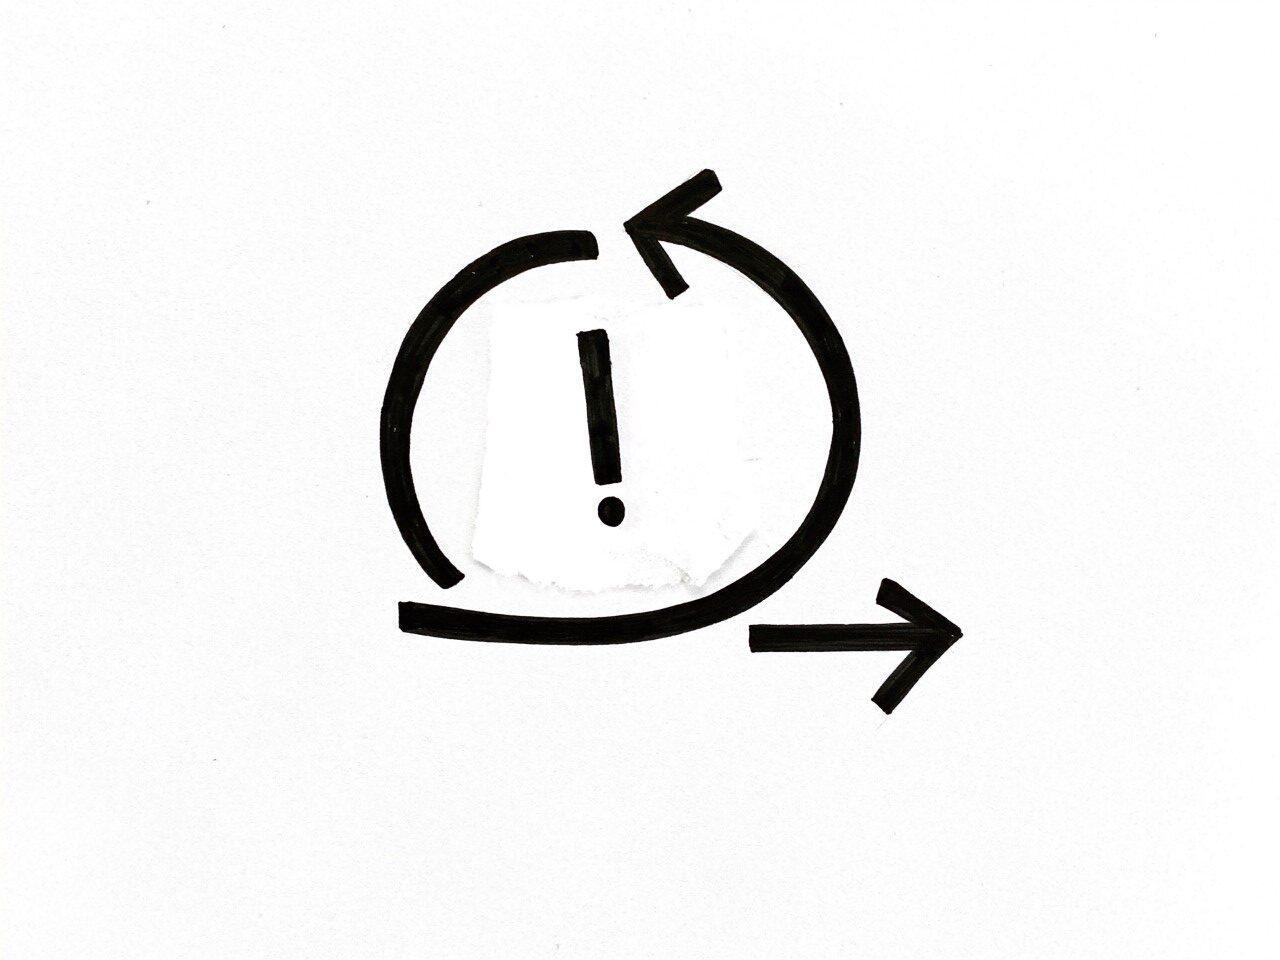 Skizzierter Pfeil, der sich im Kreis dreht und dann rechts unten weg geht, mit einem Ausrufezeichen in der Mitte. Als Symbol für "Wie bringt man Mitarbeitende dazu, Probleme agil zu lösen?"